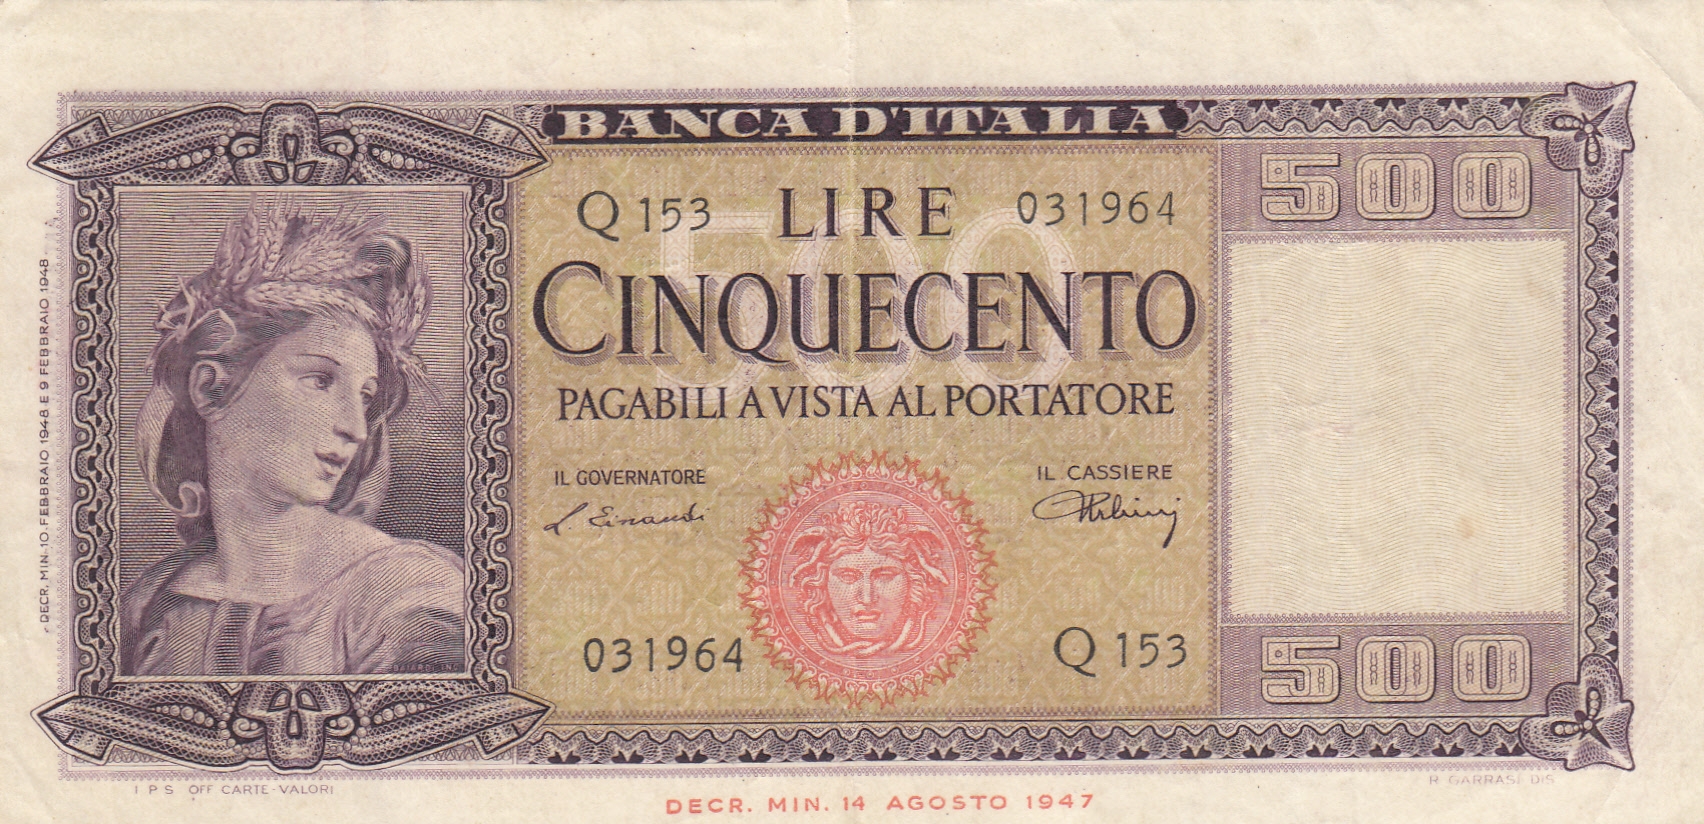 CRBX243 BILLETE ITALIA 500 LIRAS 1953 MBC 